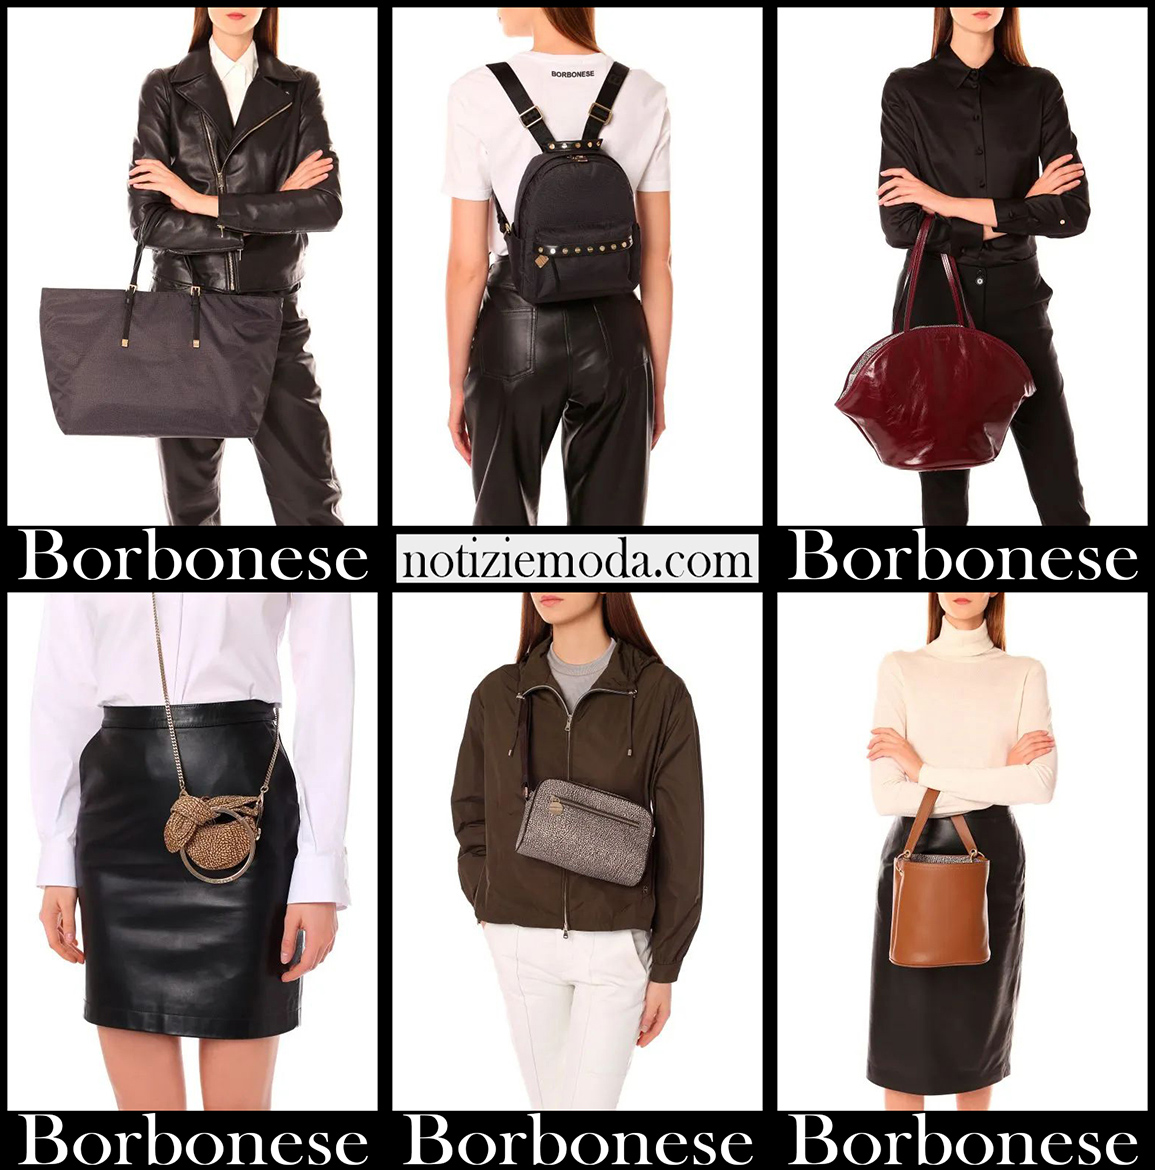 Nuovi arrivi borse Borbonese 2021 accessori moda donna